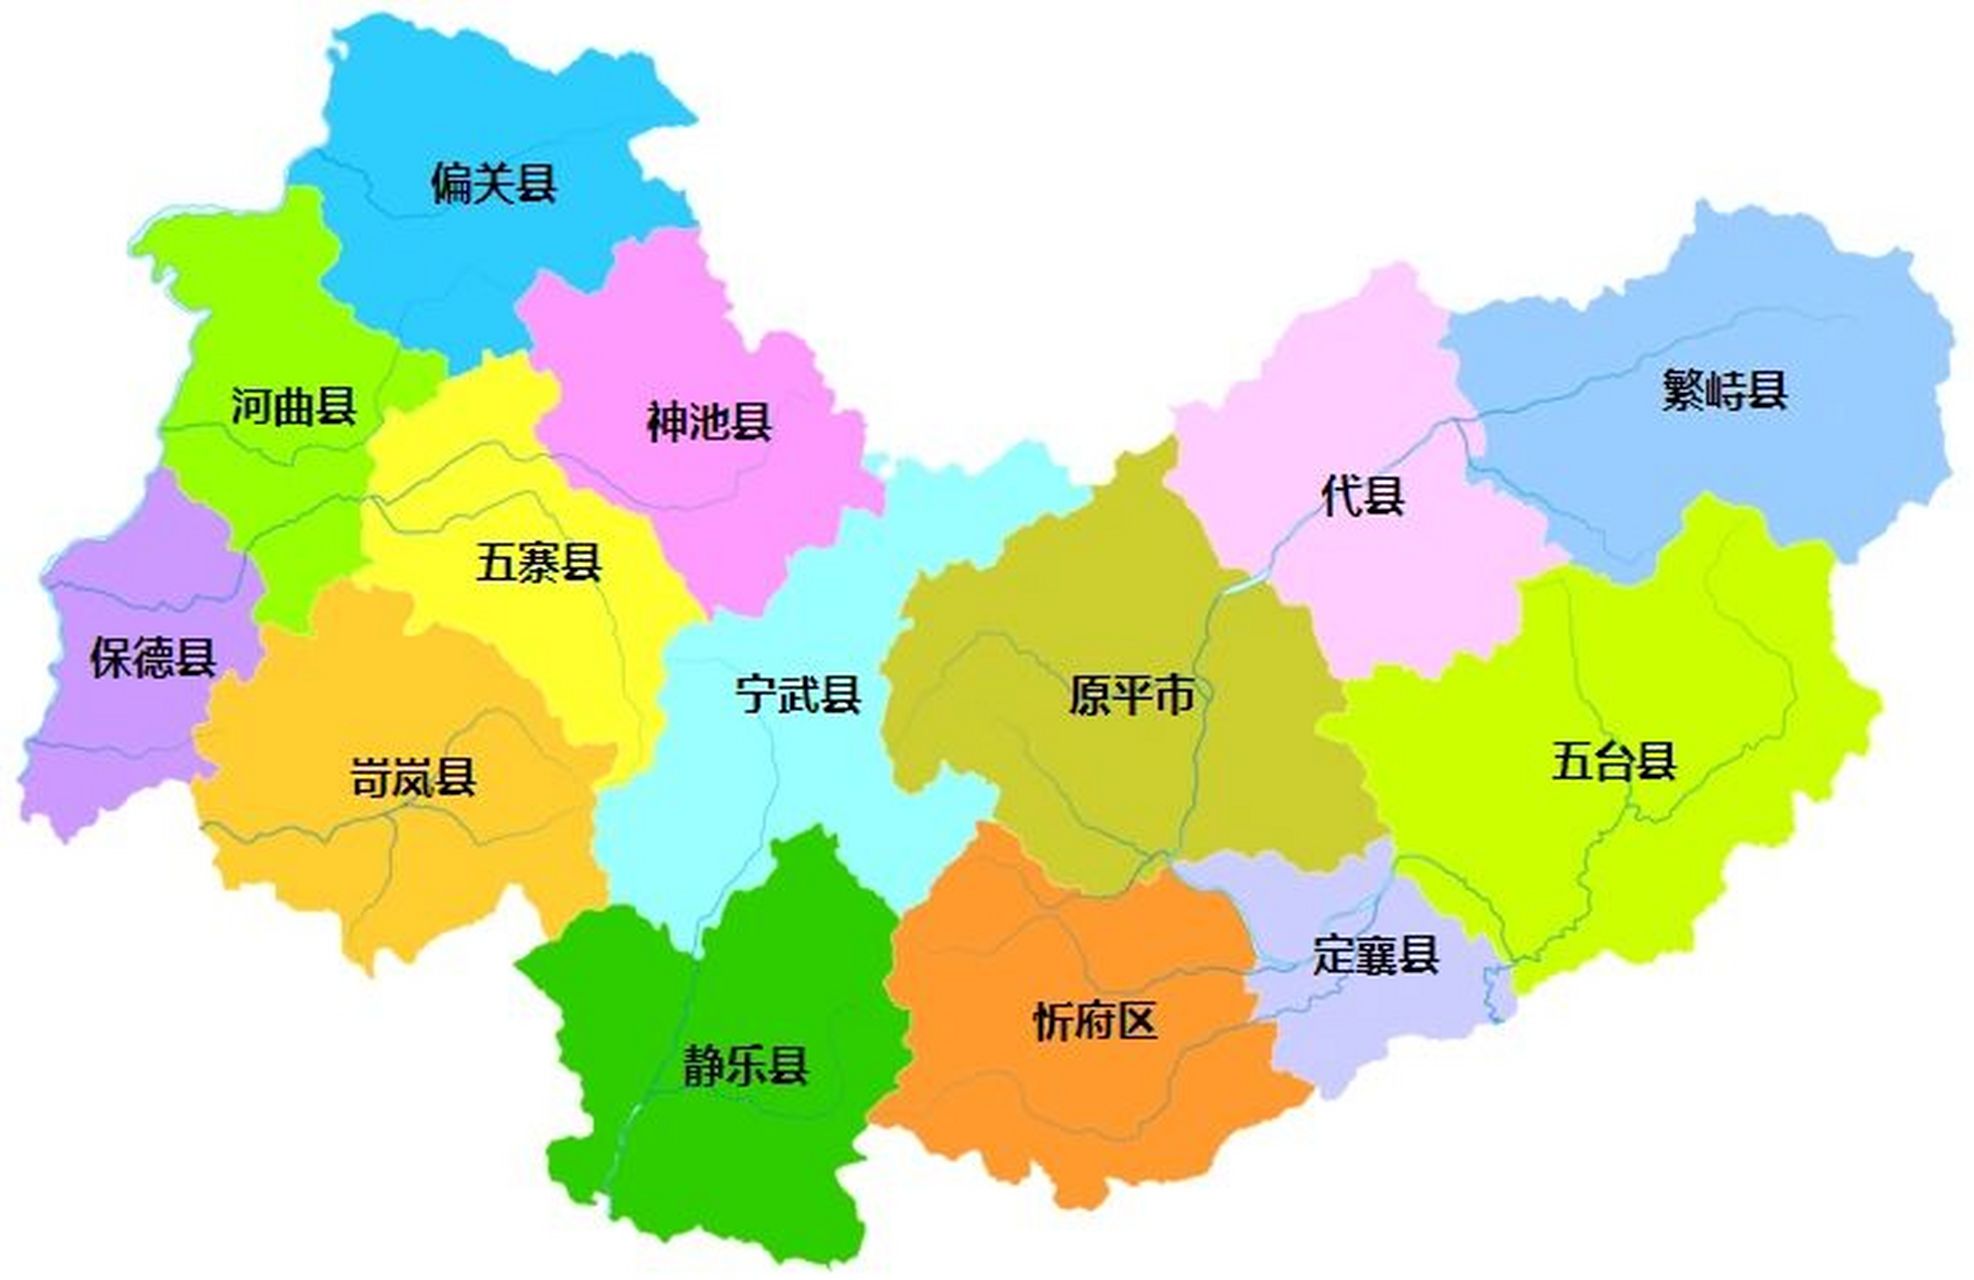 忻州行政区划 忻州市,山西省辖地级市,总面积为25150平方公里,常住人